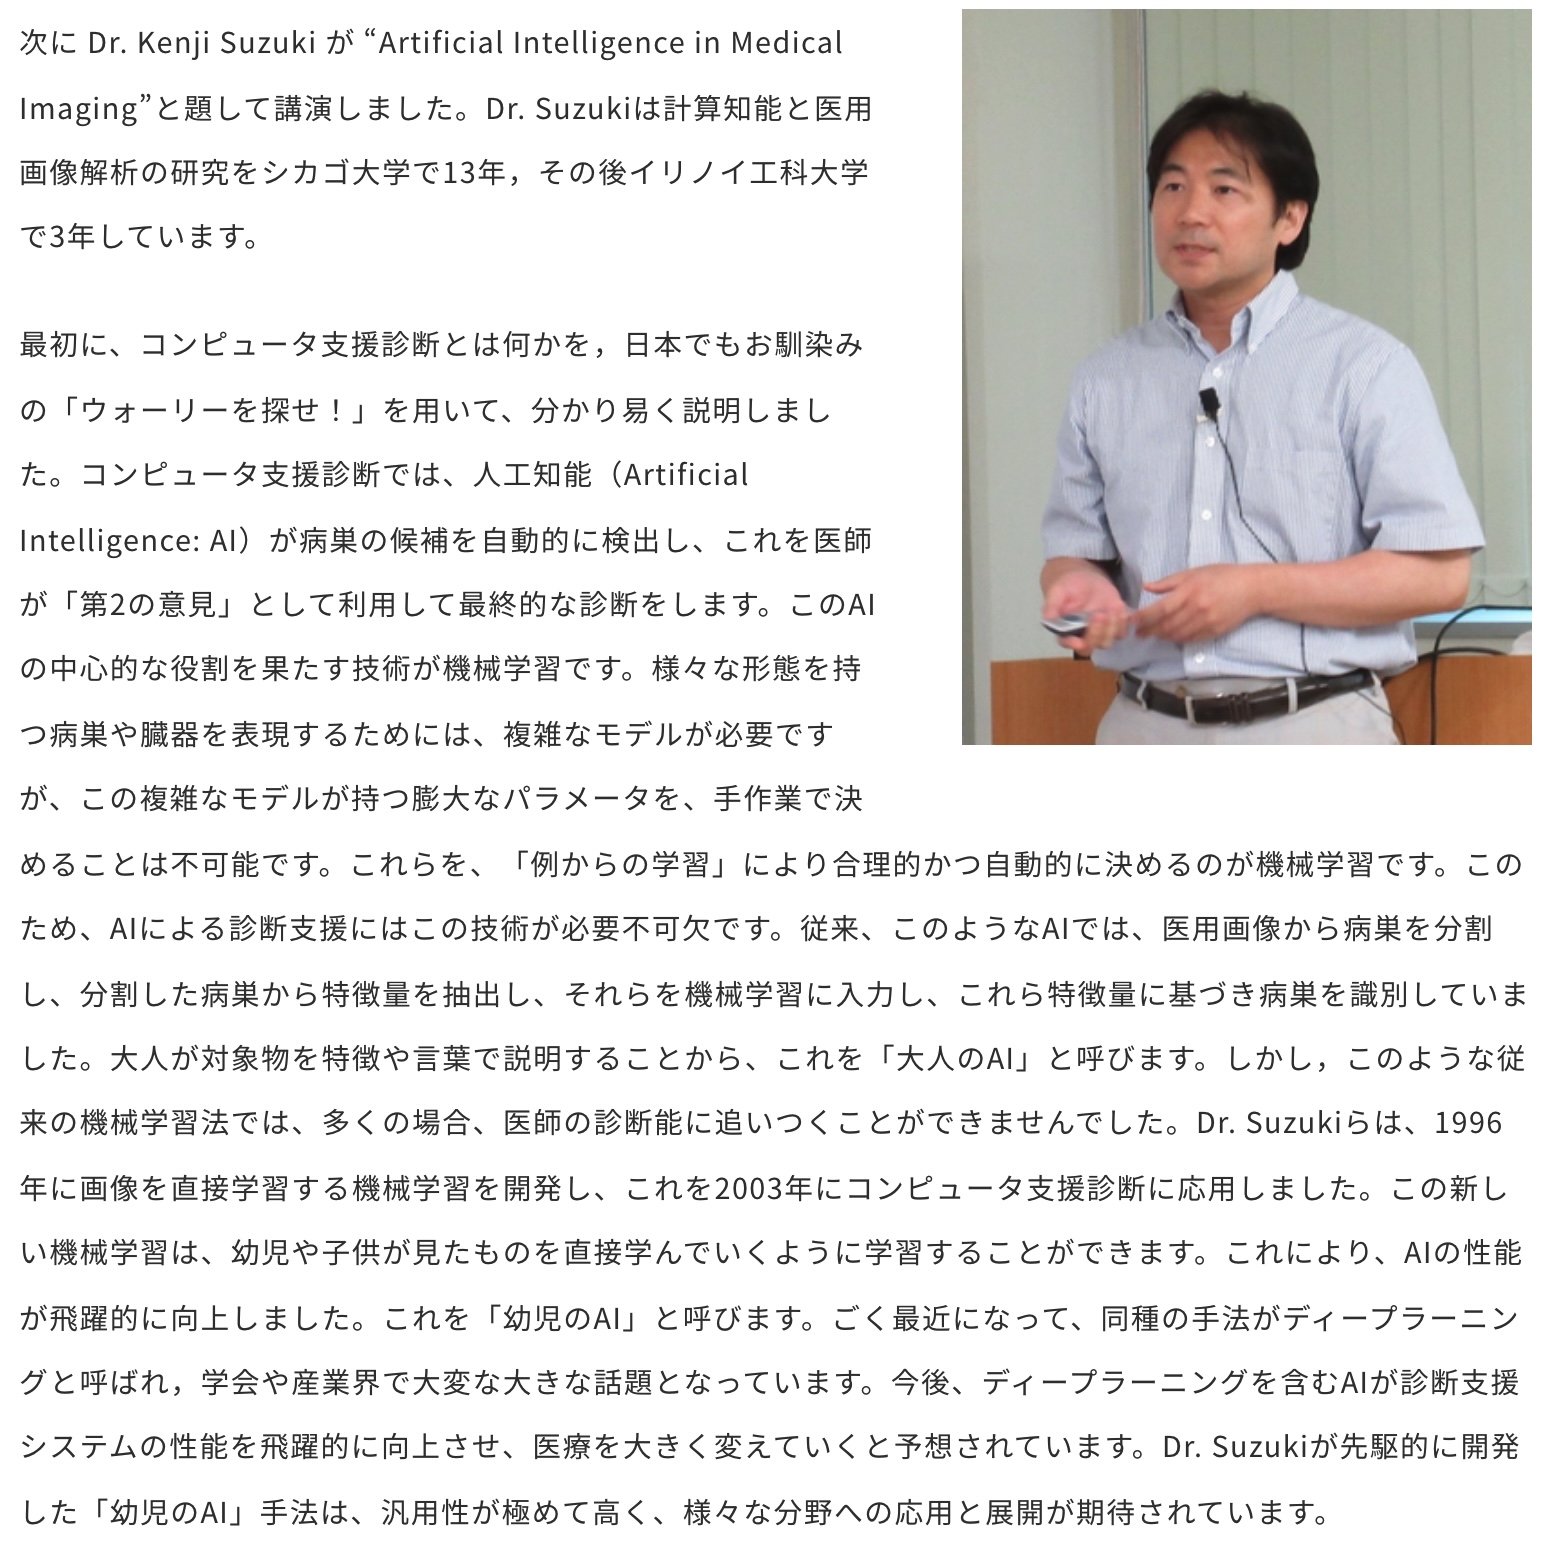 鈴木教授がWRHIで講演を行いました